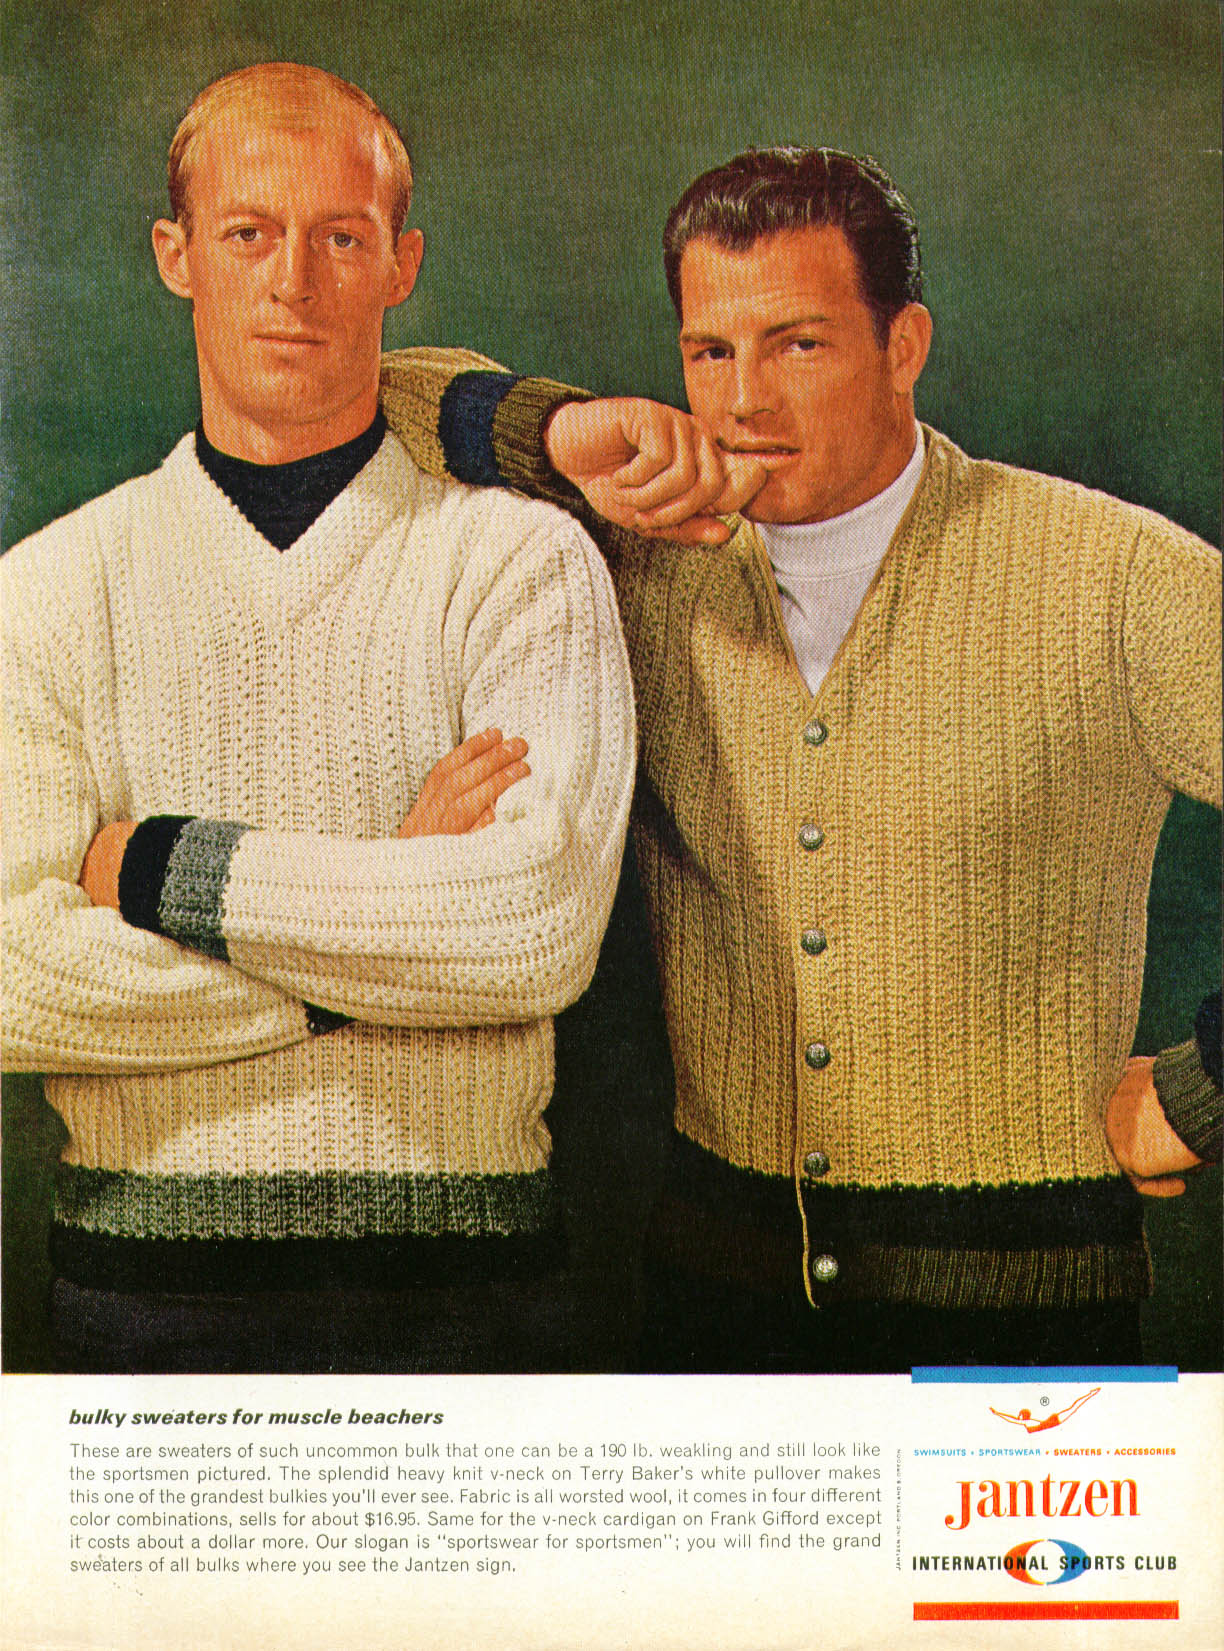 Terry Baker & Frank Gifford Jantzen Bulky Sweaters for Muscle Beachers ...